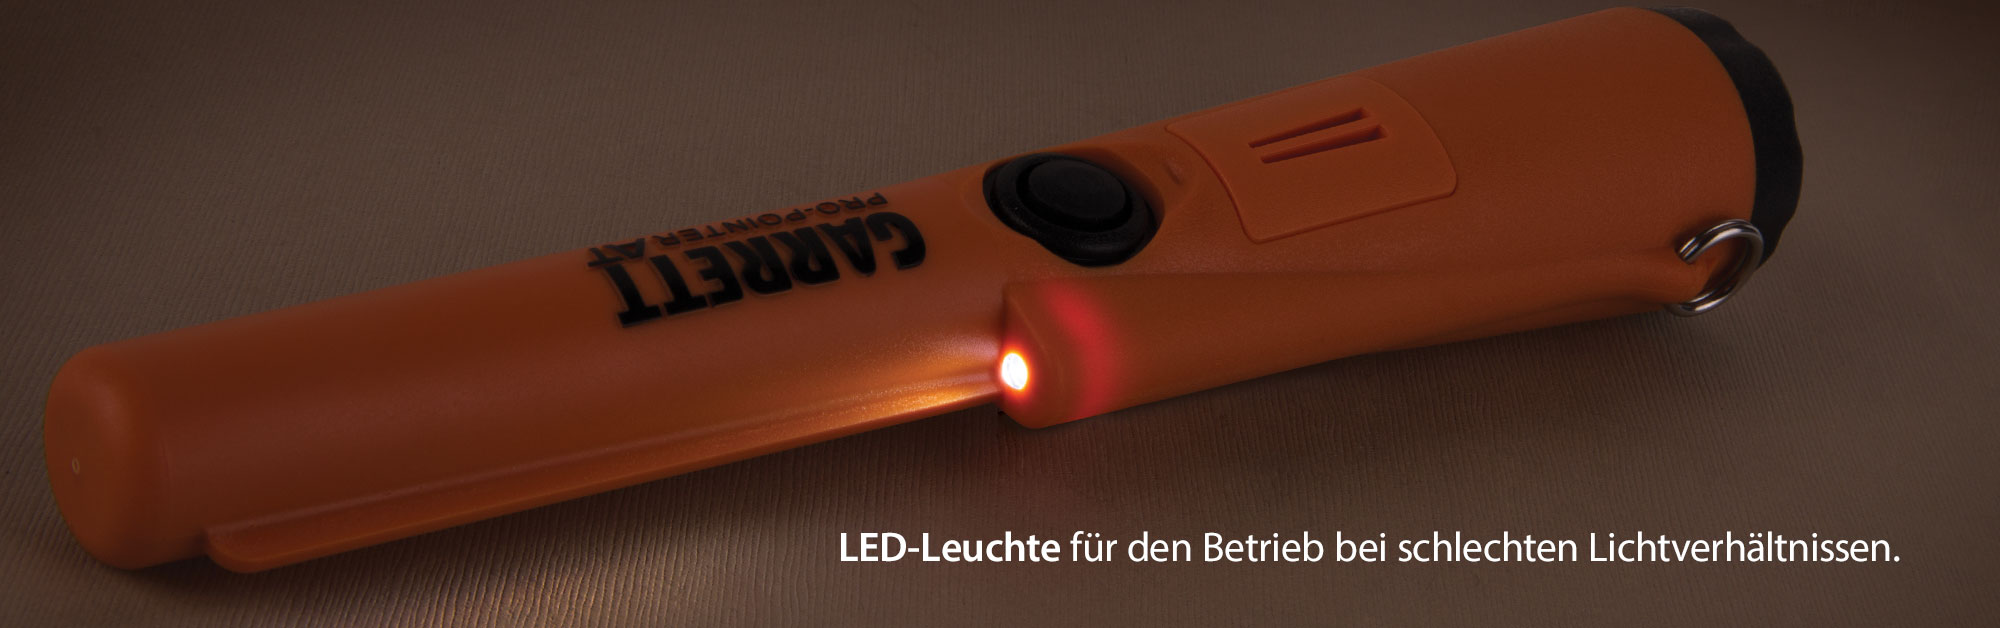 LED-Lampe für den Betrieb bei schlechten Lichtverhältnissen.